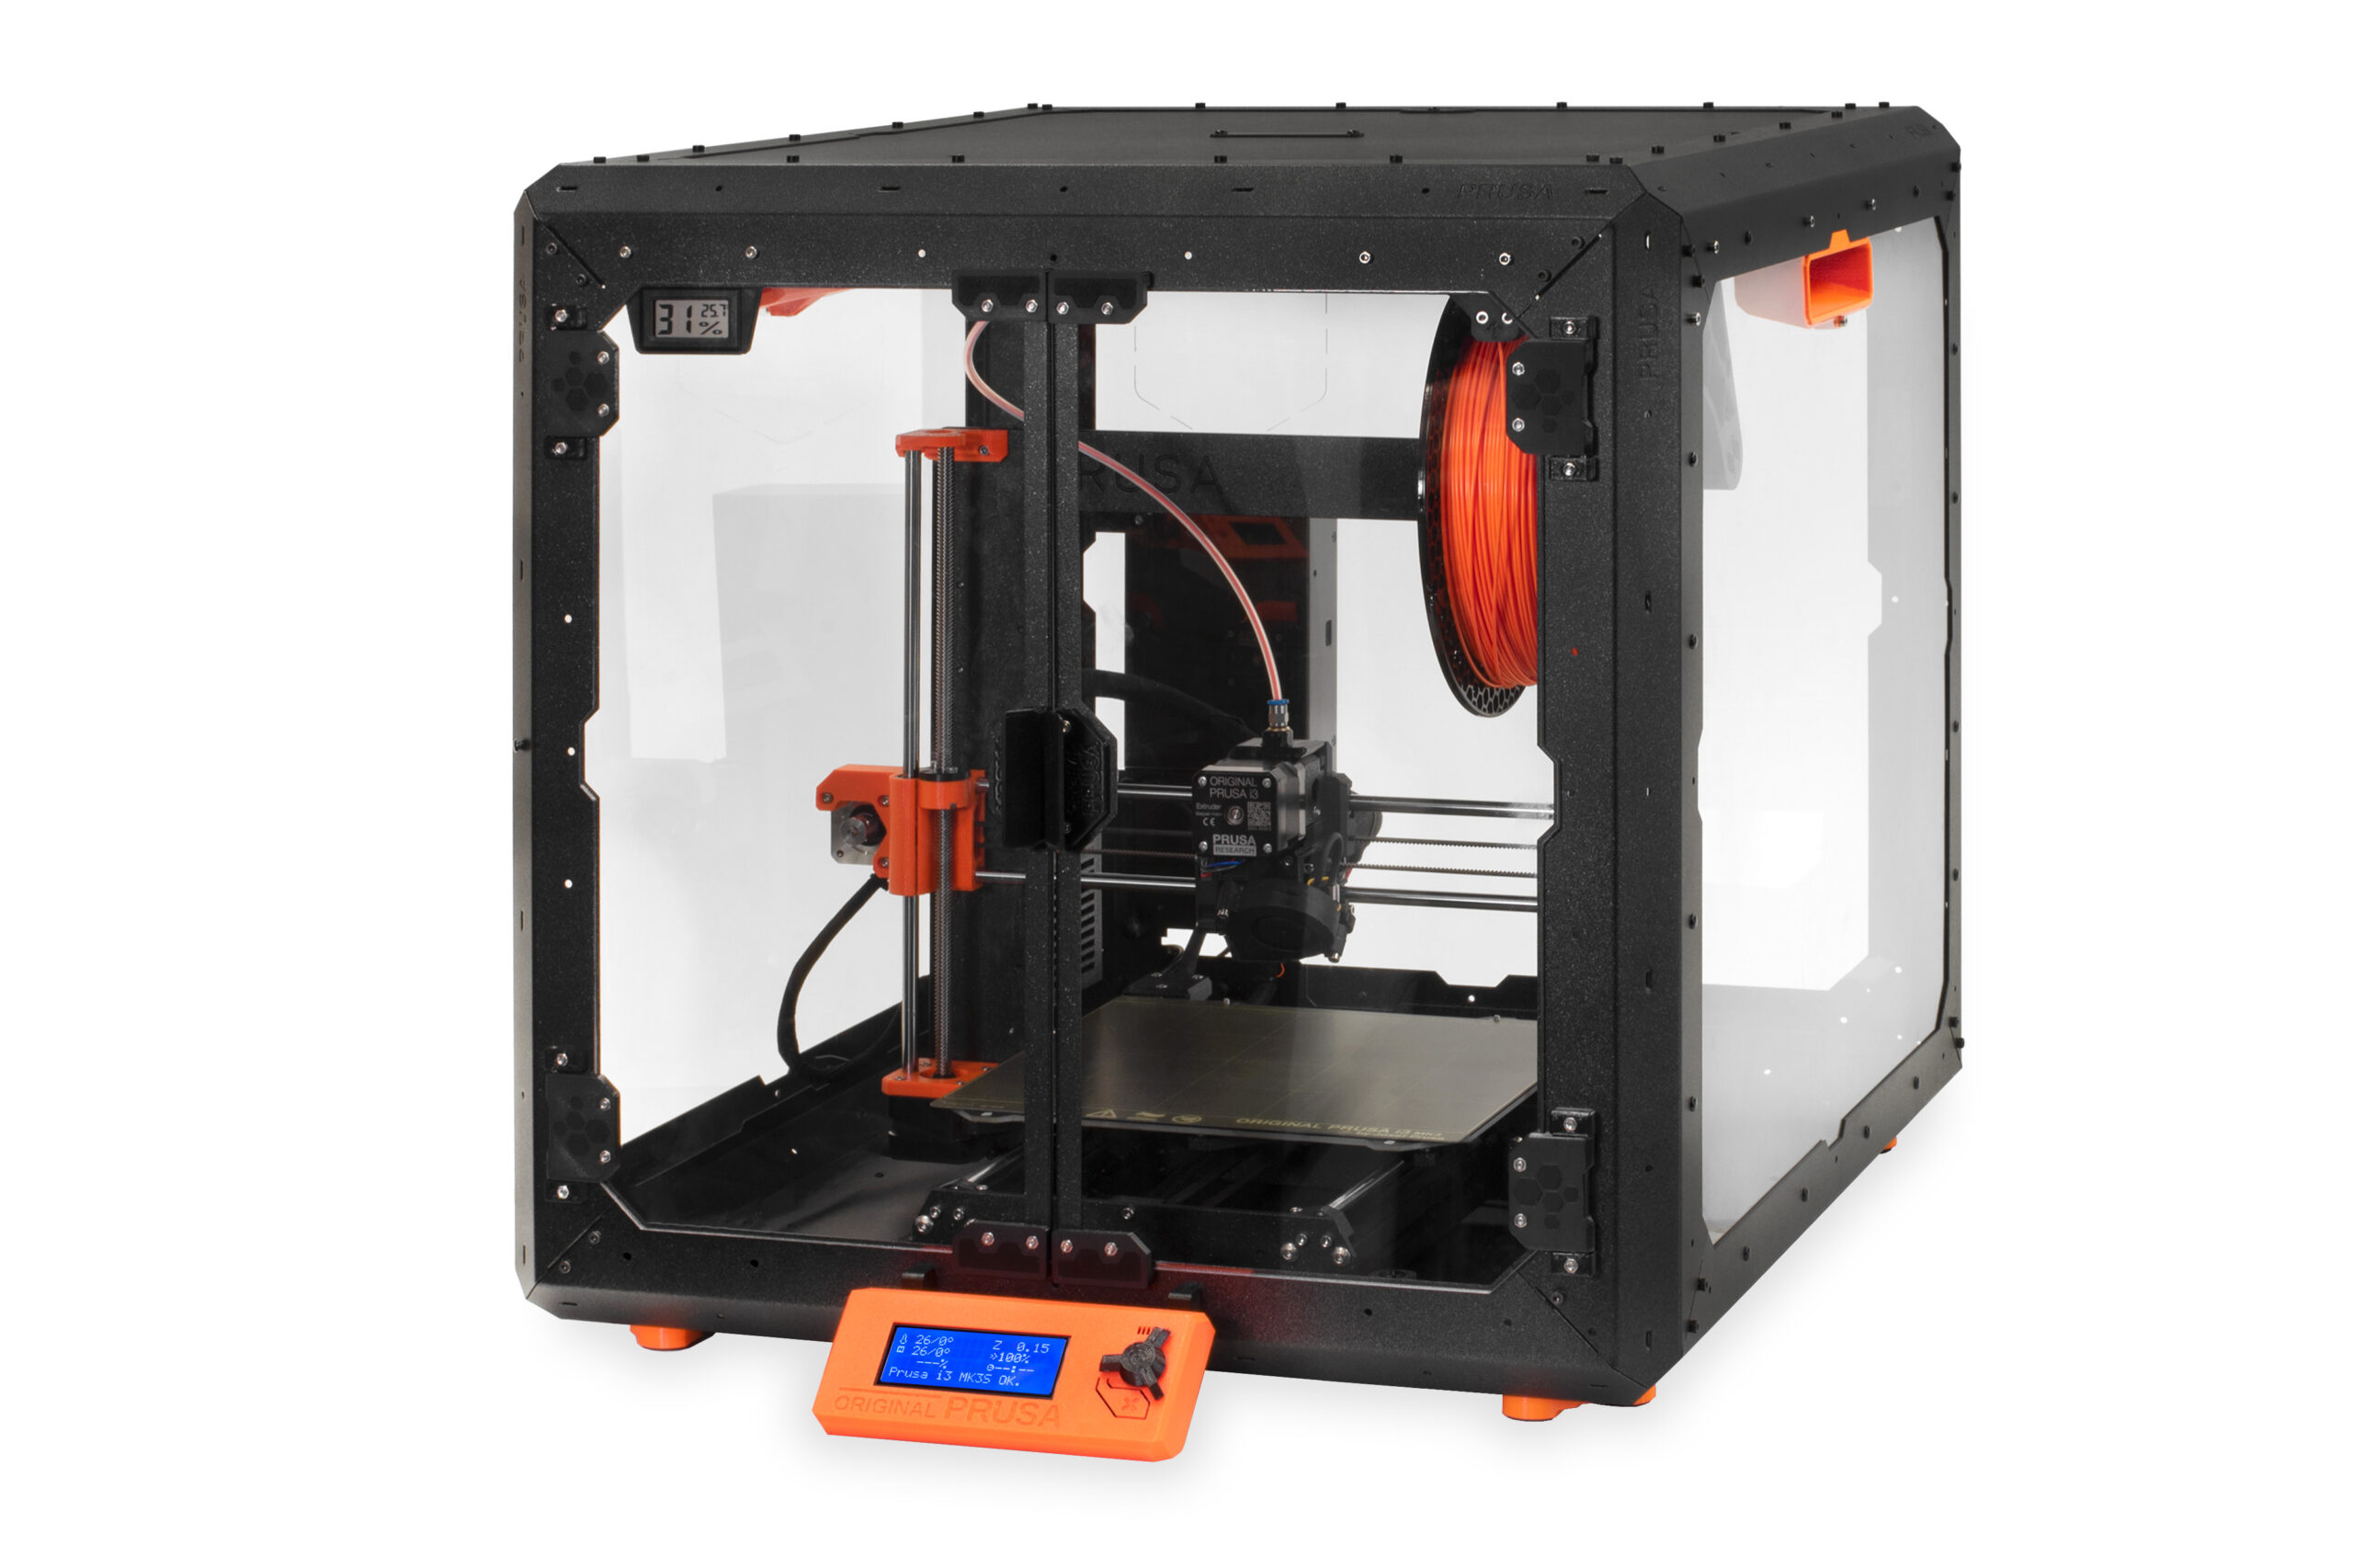 Caisson Imprimante 3D ave filtration et détection de température